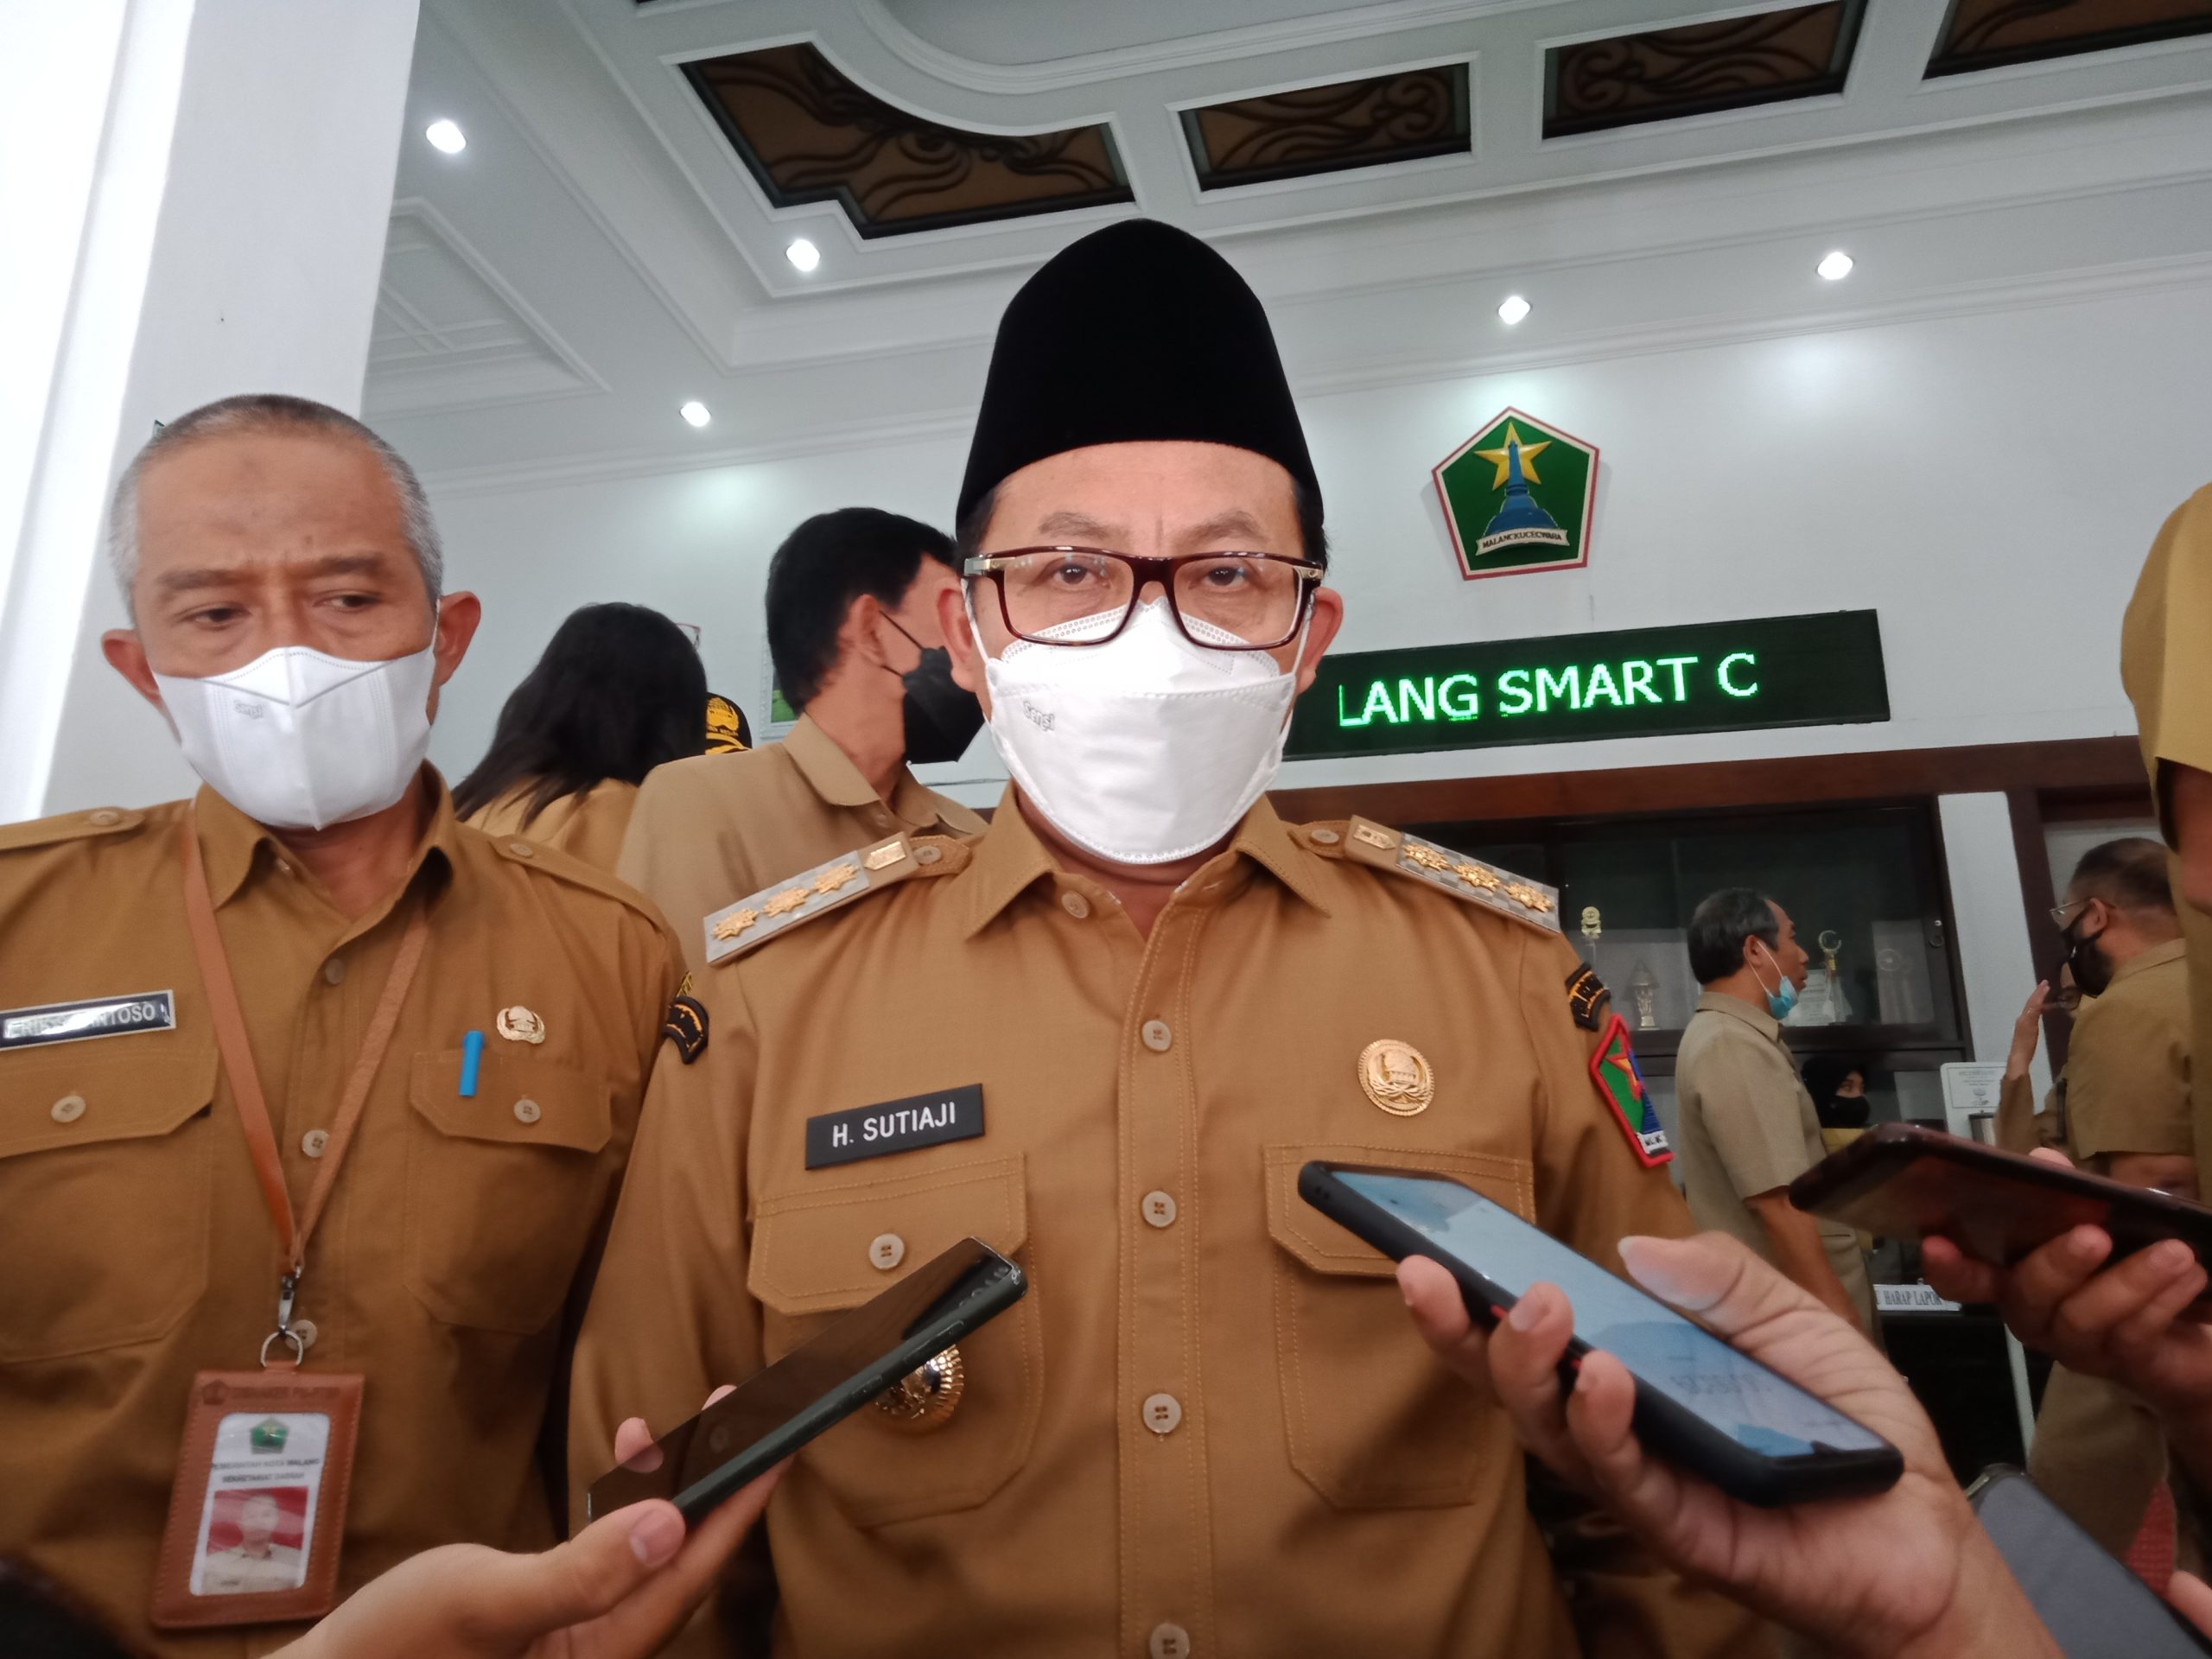 Sutiaji Tidak Memperbolehkan Takbir Keliling di Kota Malang